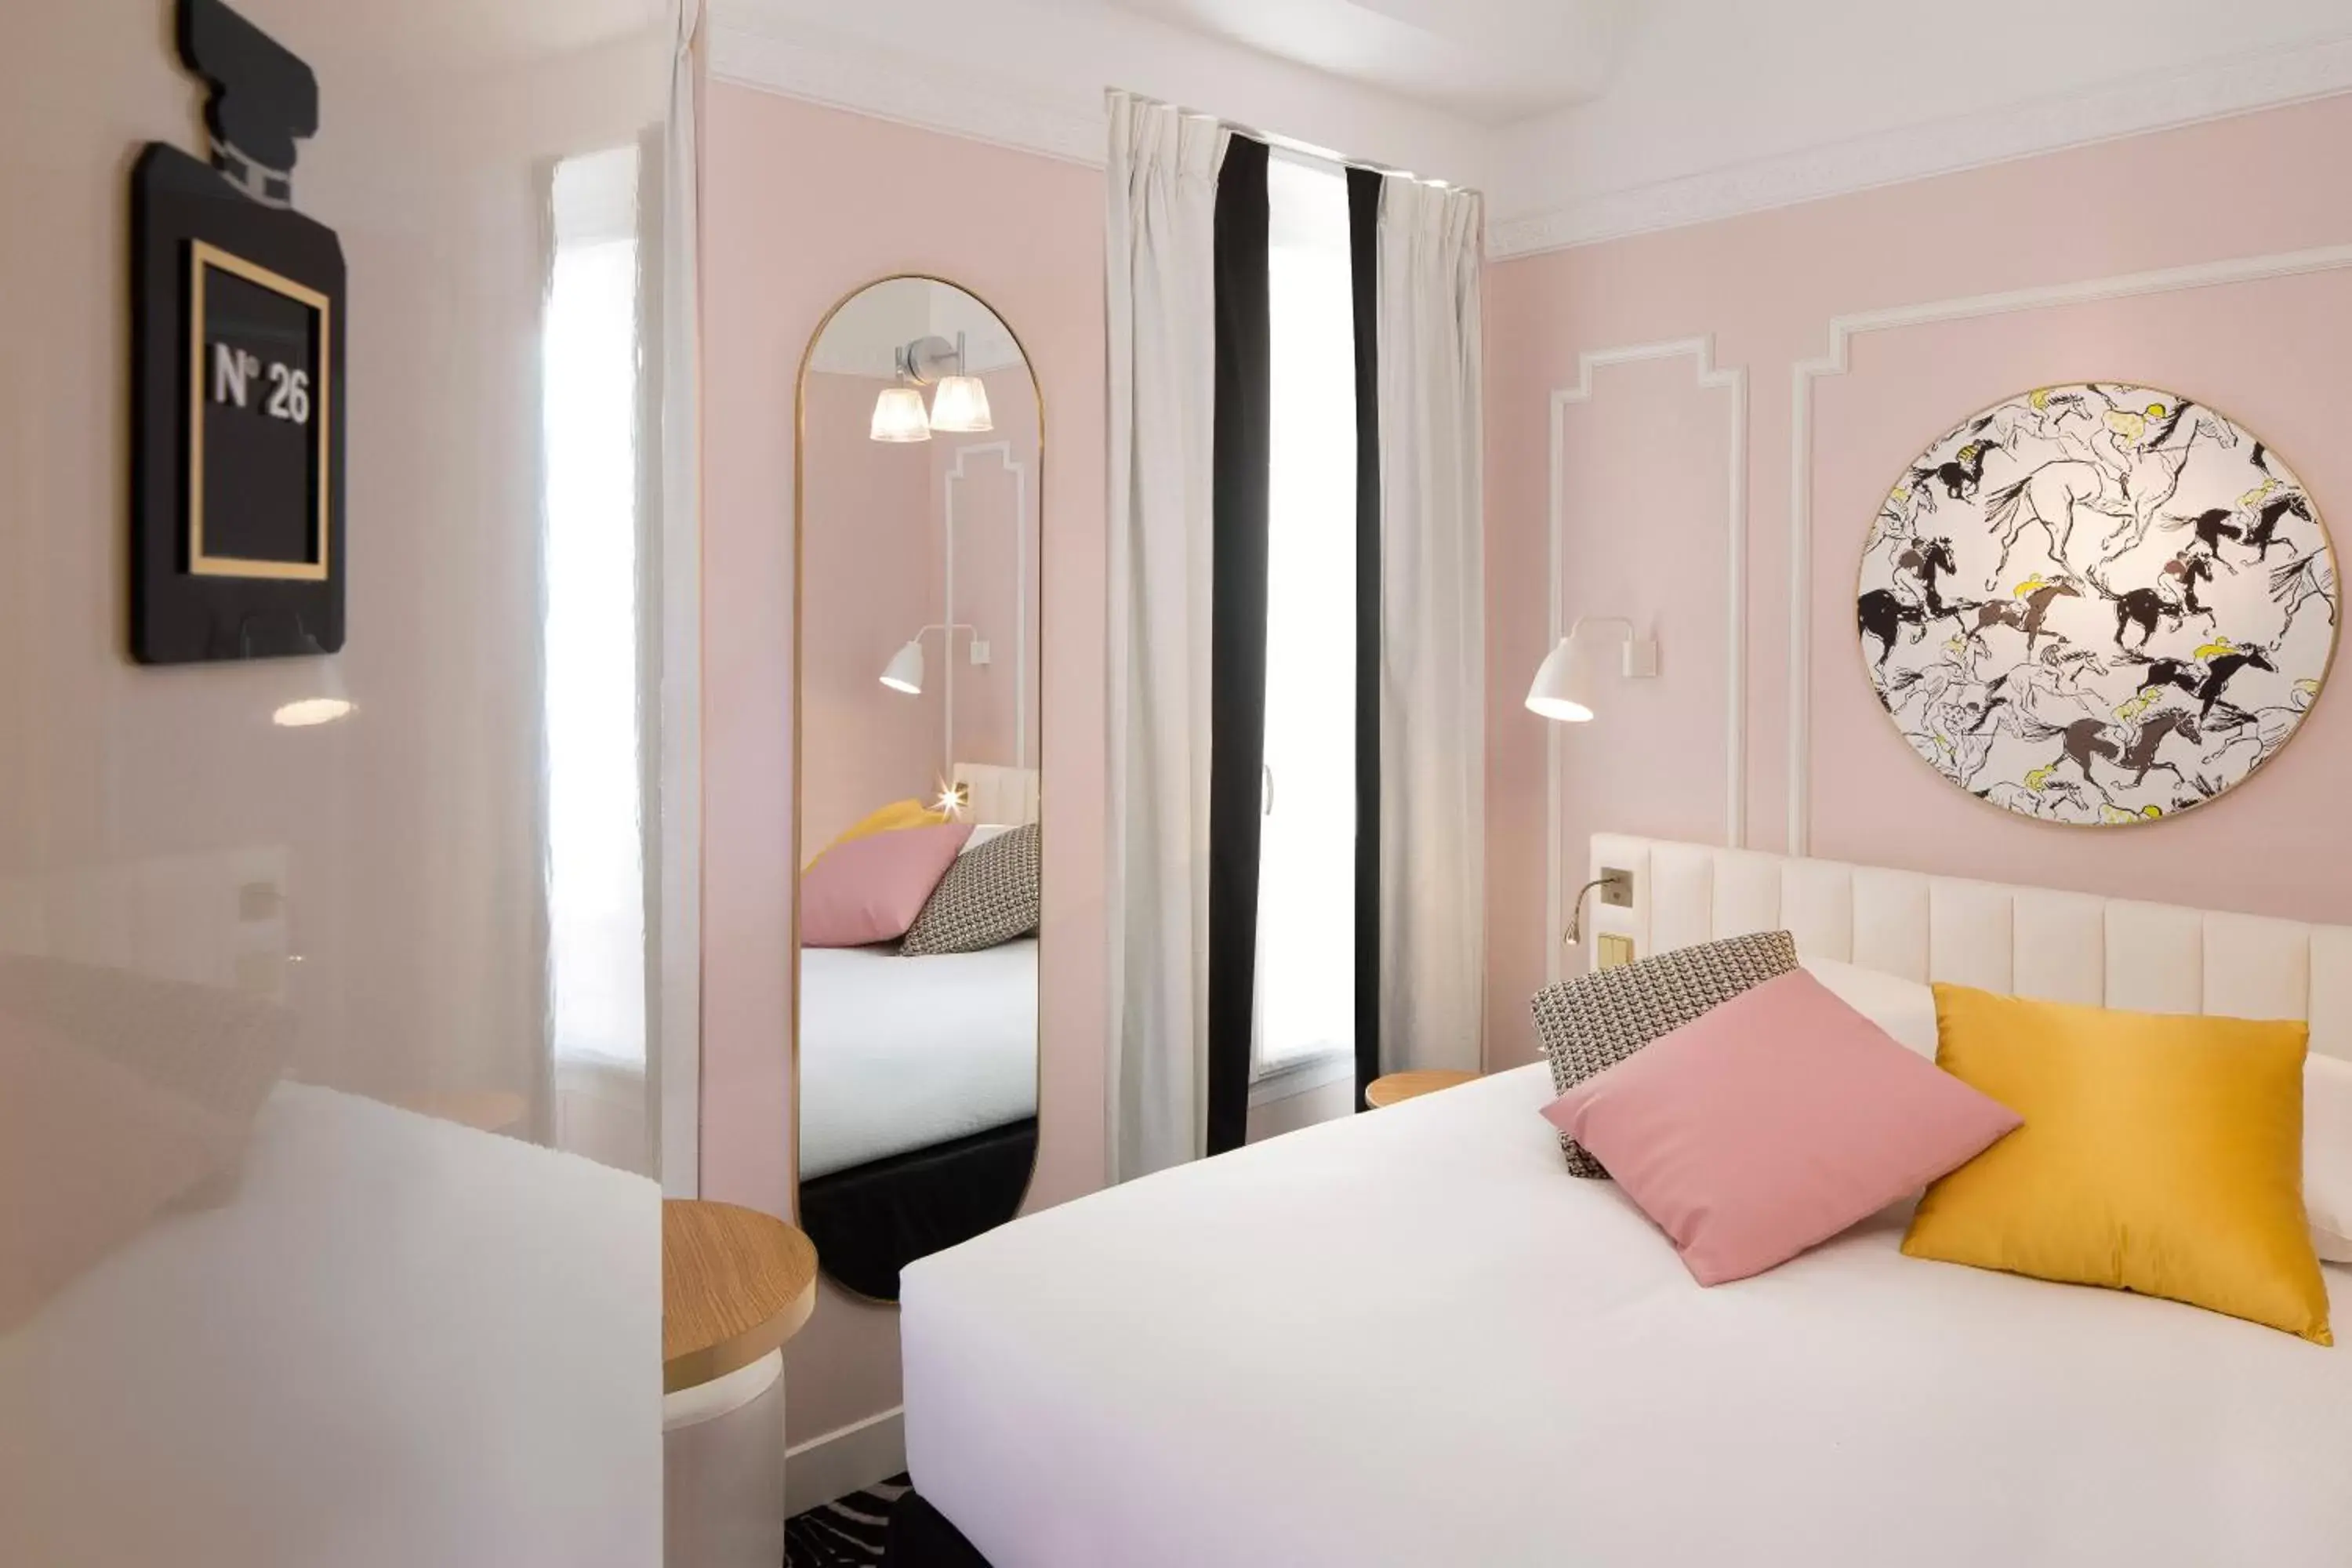 Bedroom, Bed in Hôtel Pastel Paris